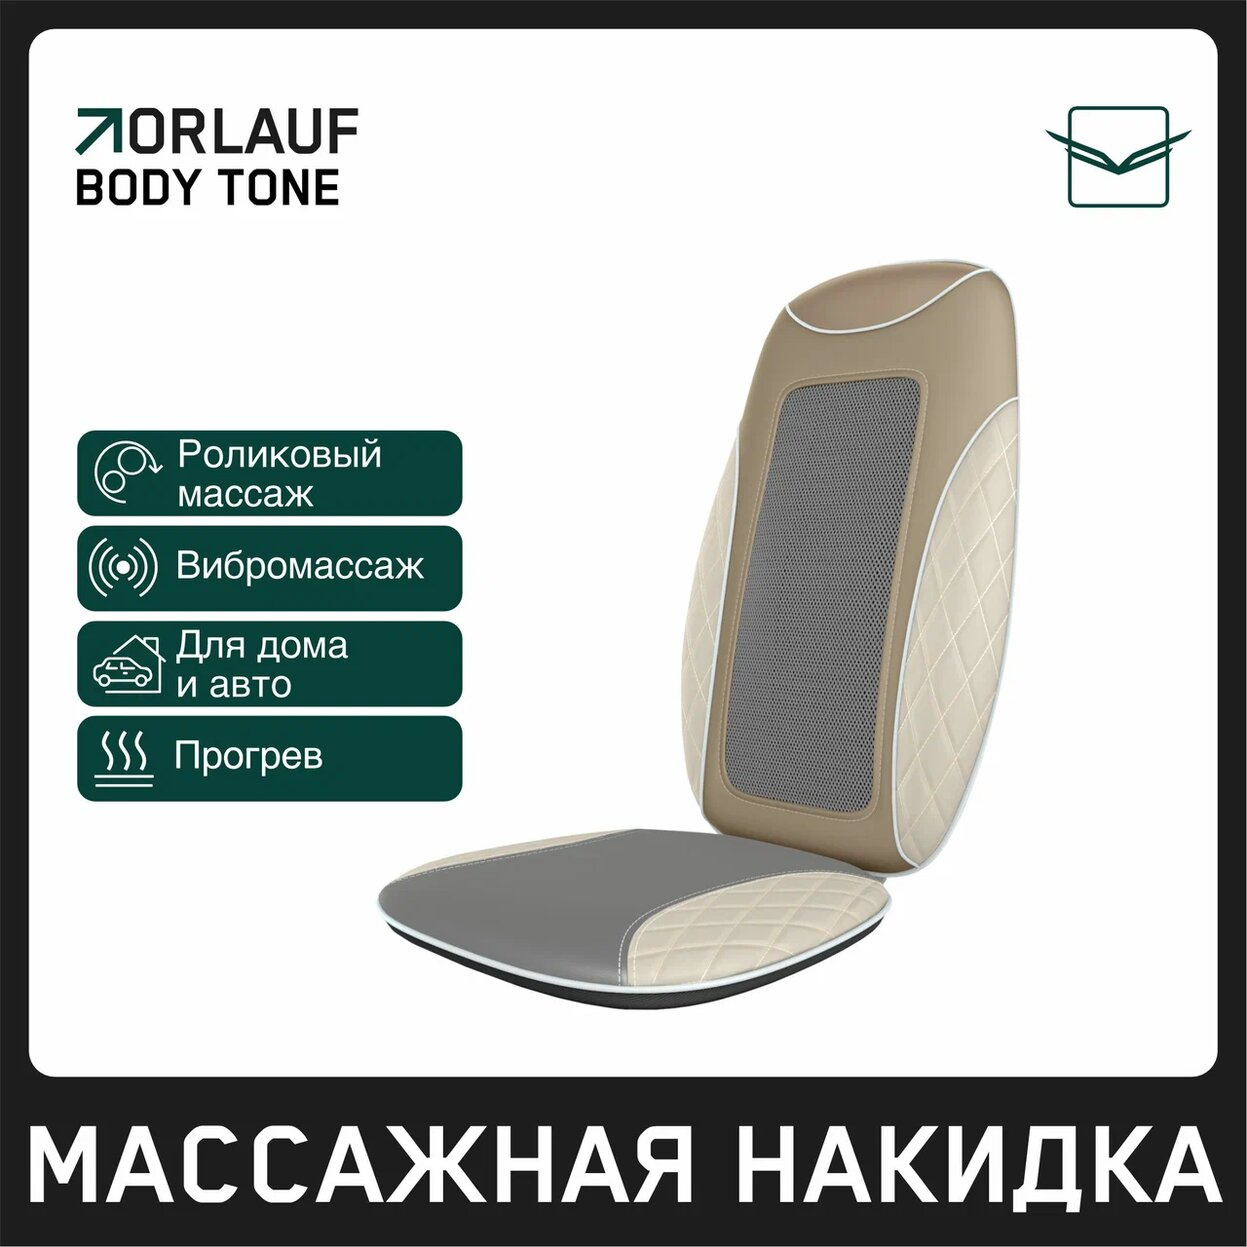 Orlauf Body Tone из каталога устройств для массажа в Сочи по цене 15400 ₽